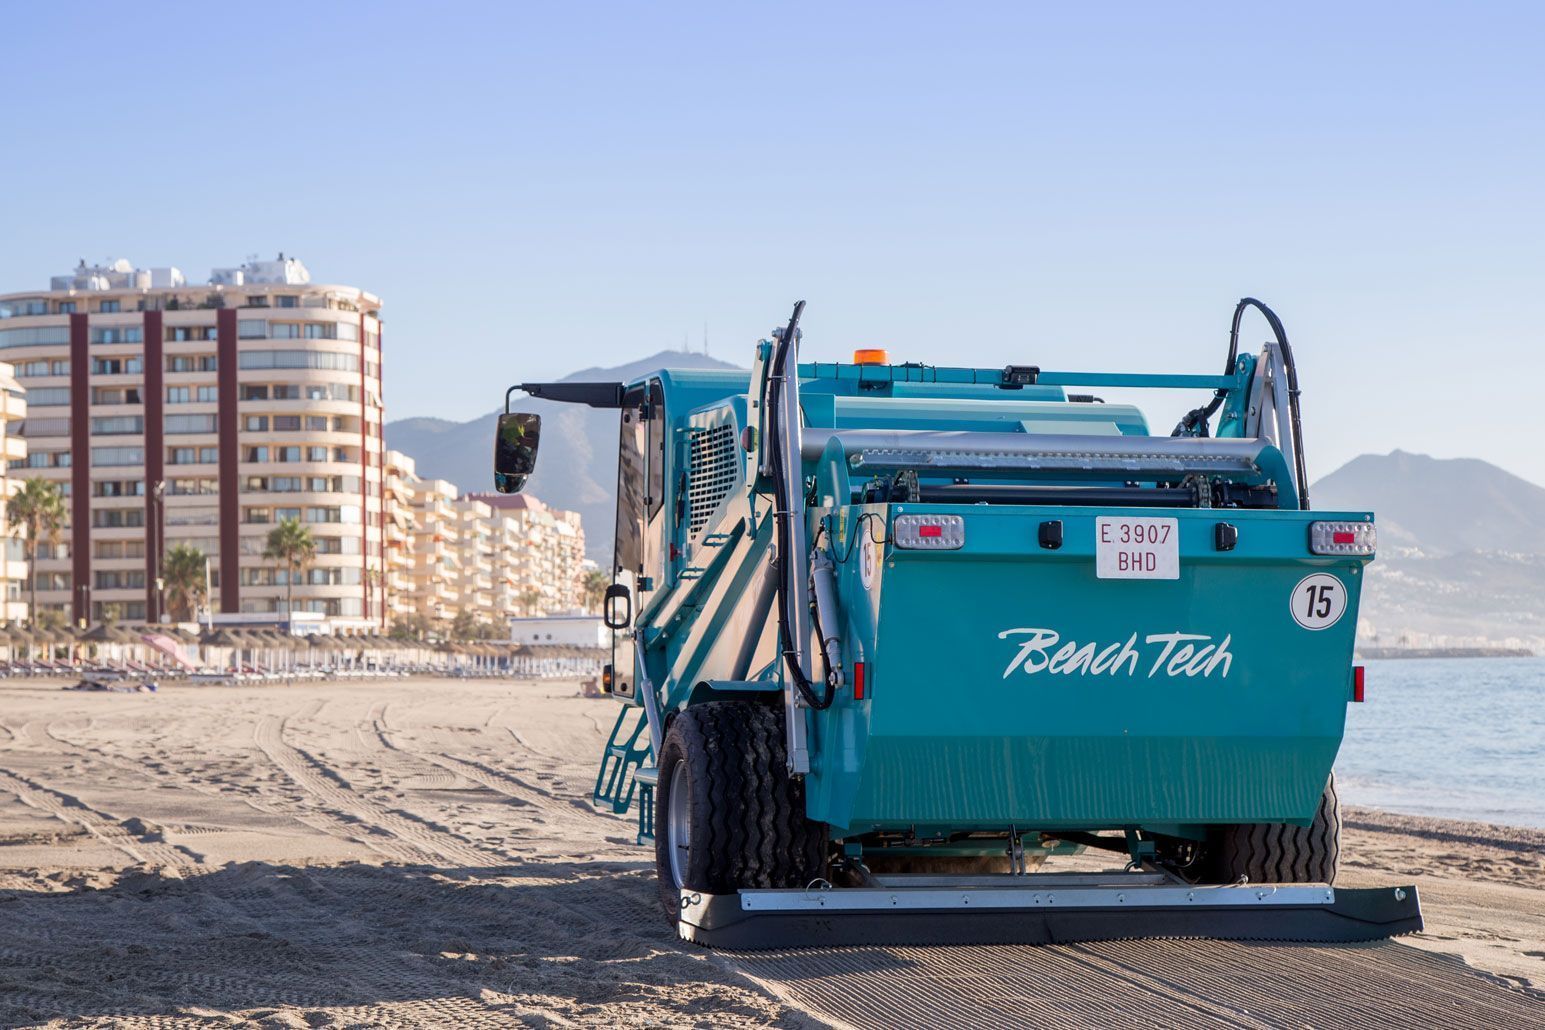 Le BeachTech 5500 en train de nettoyer les plages